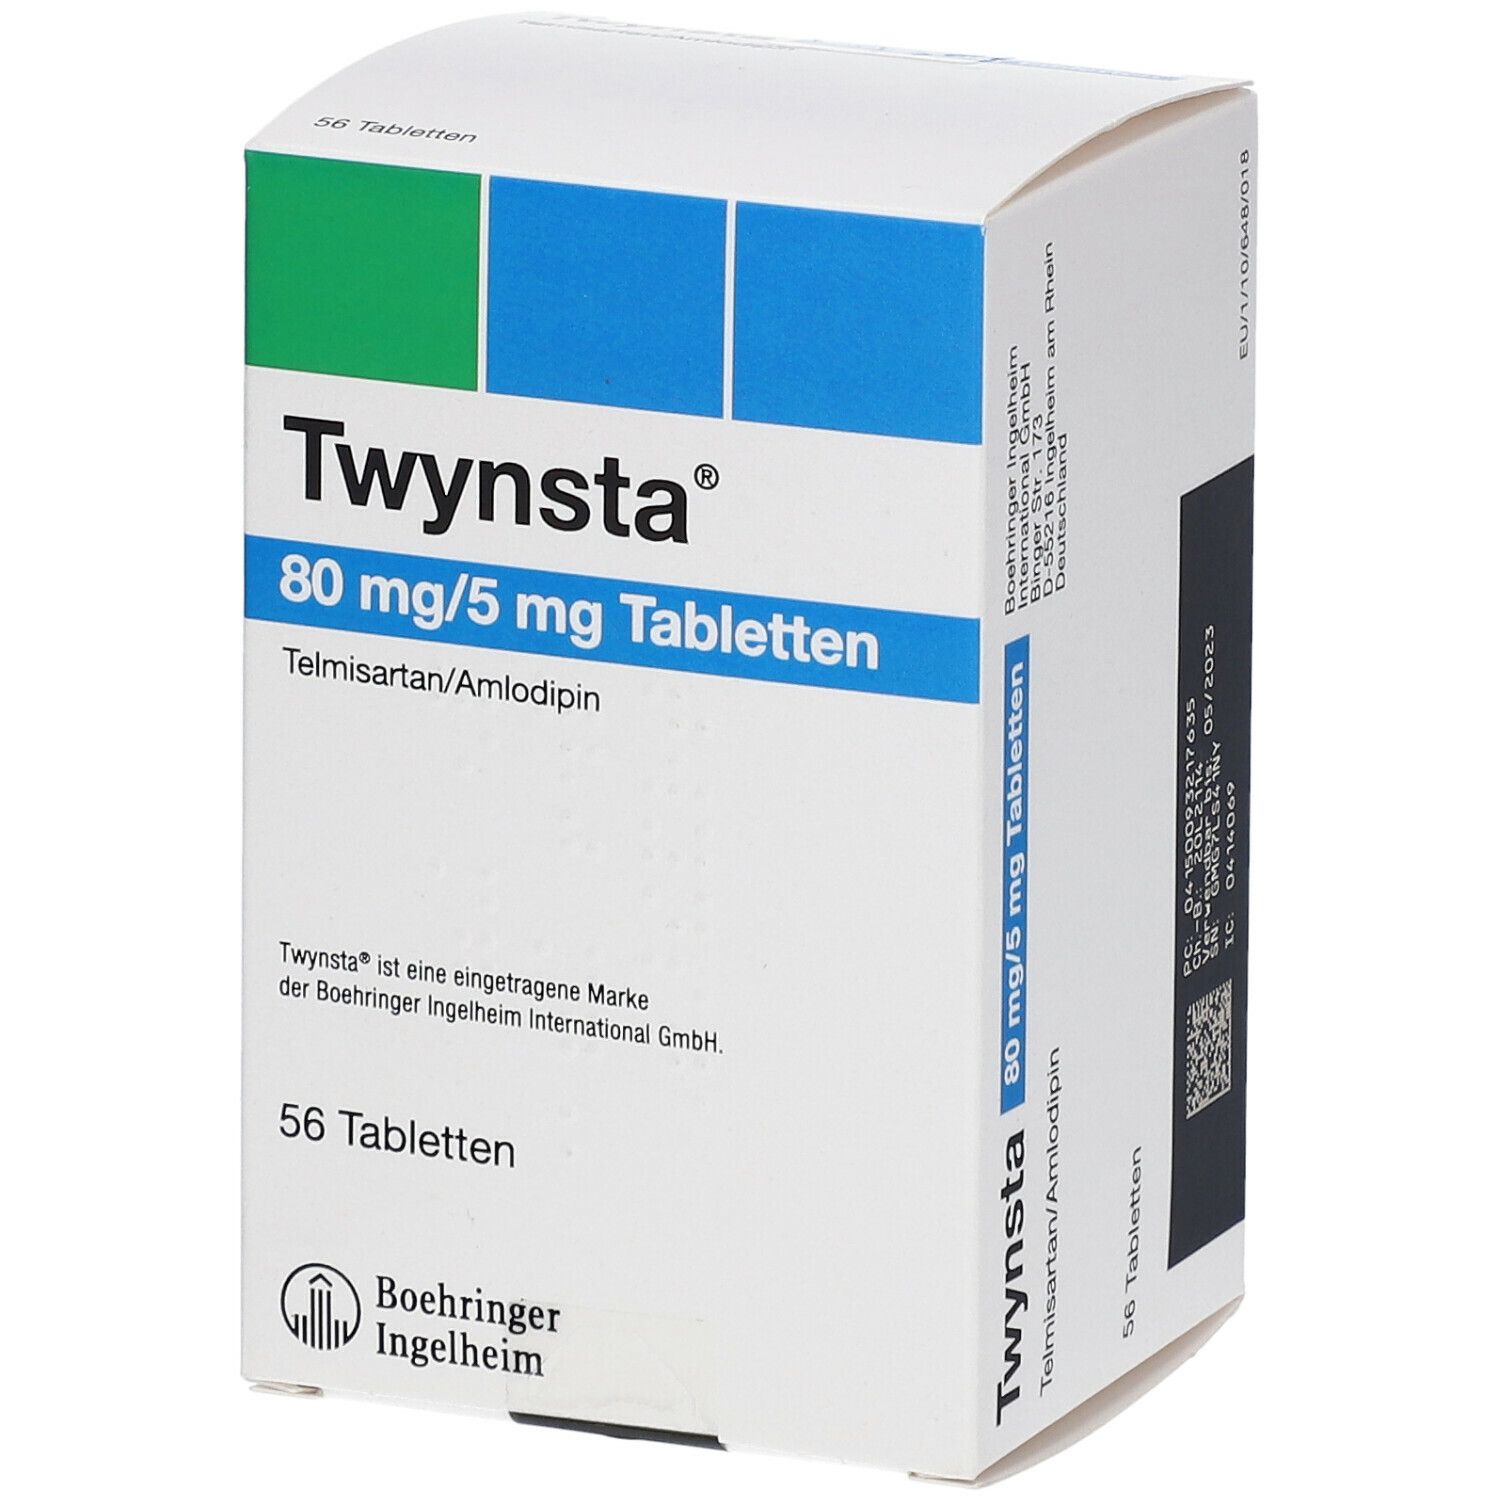 Twynsta® 80 mg/50 mg